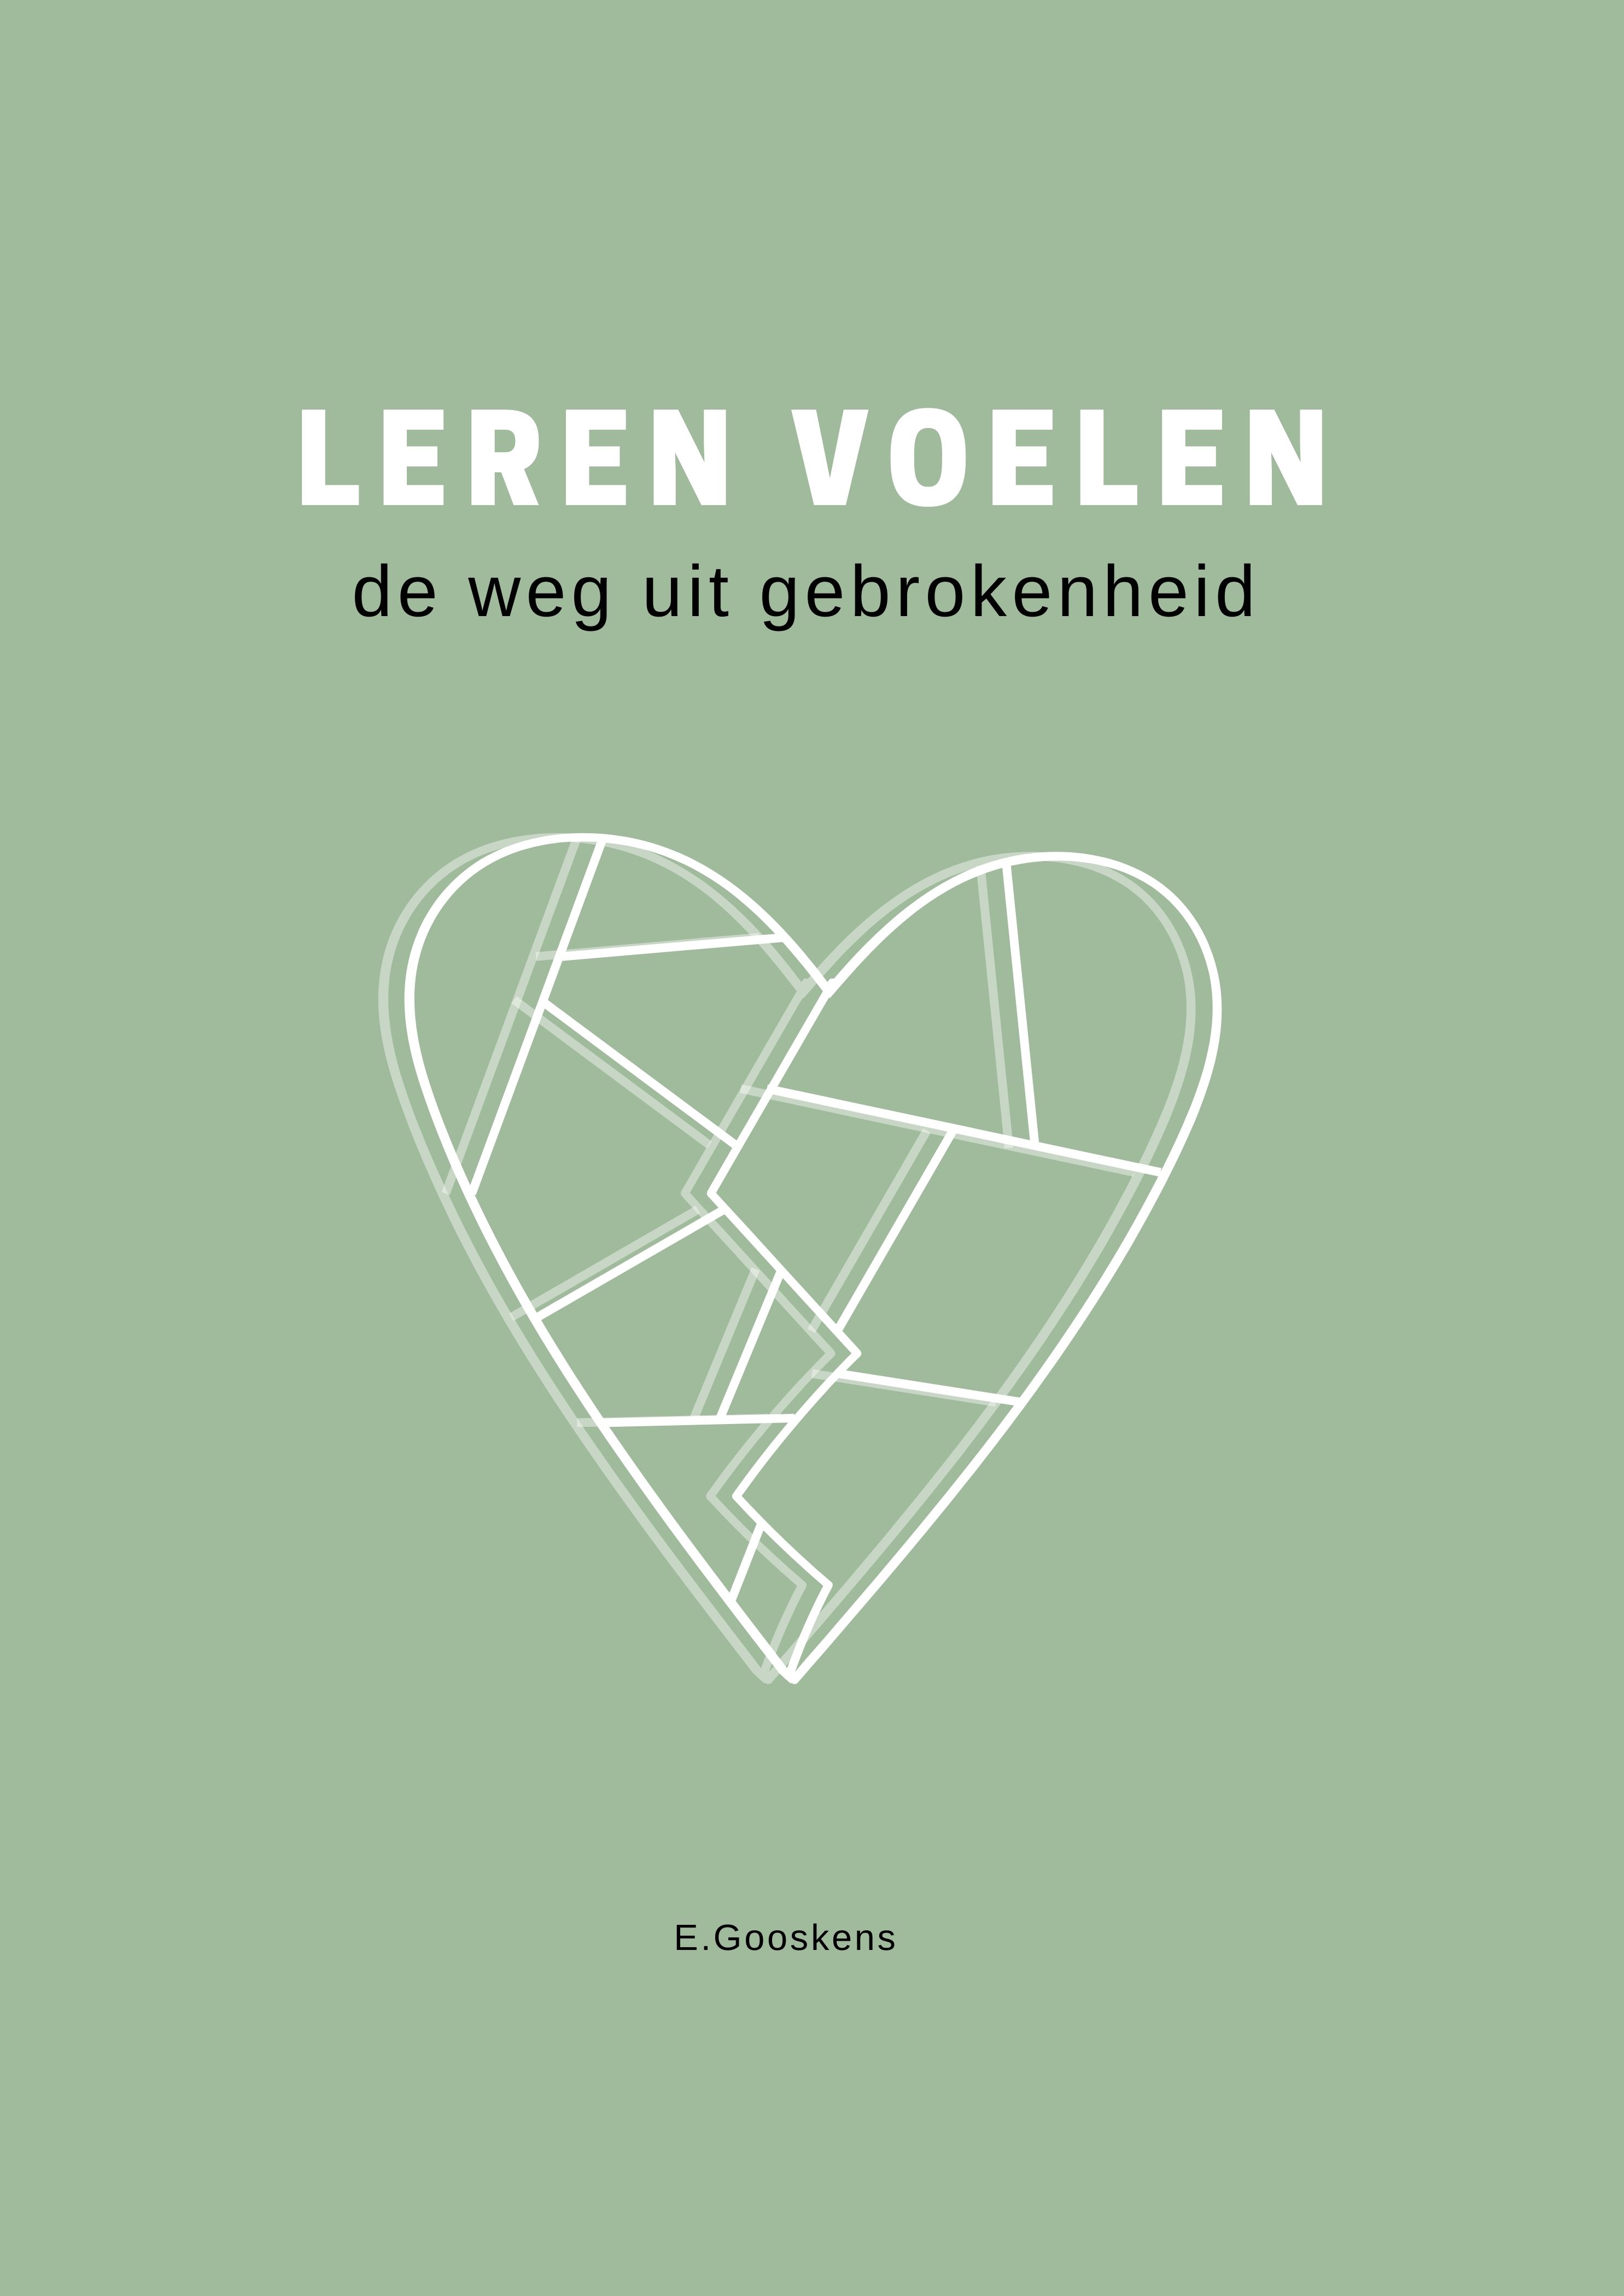 Boek ‘Leren Voelen’ Pre Order